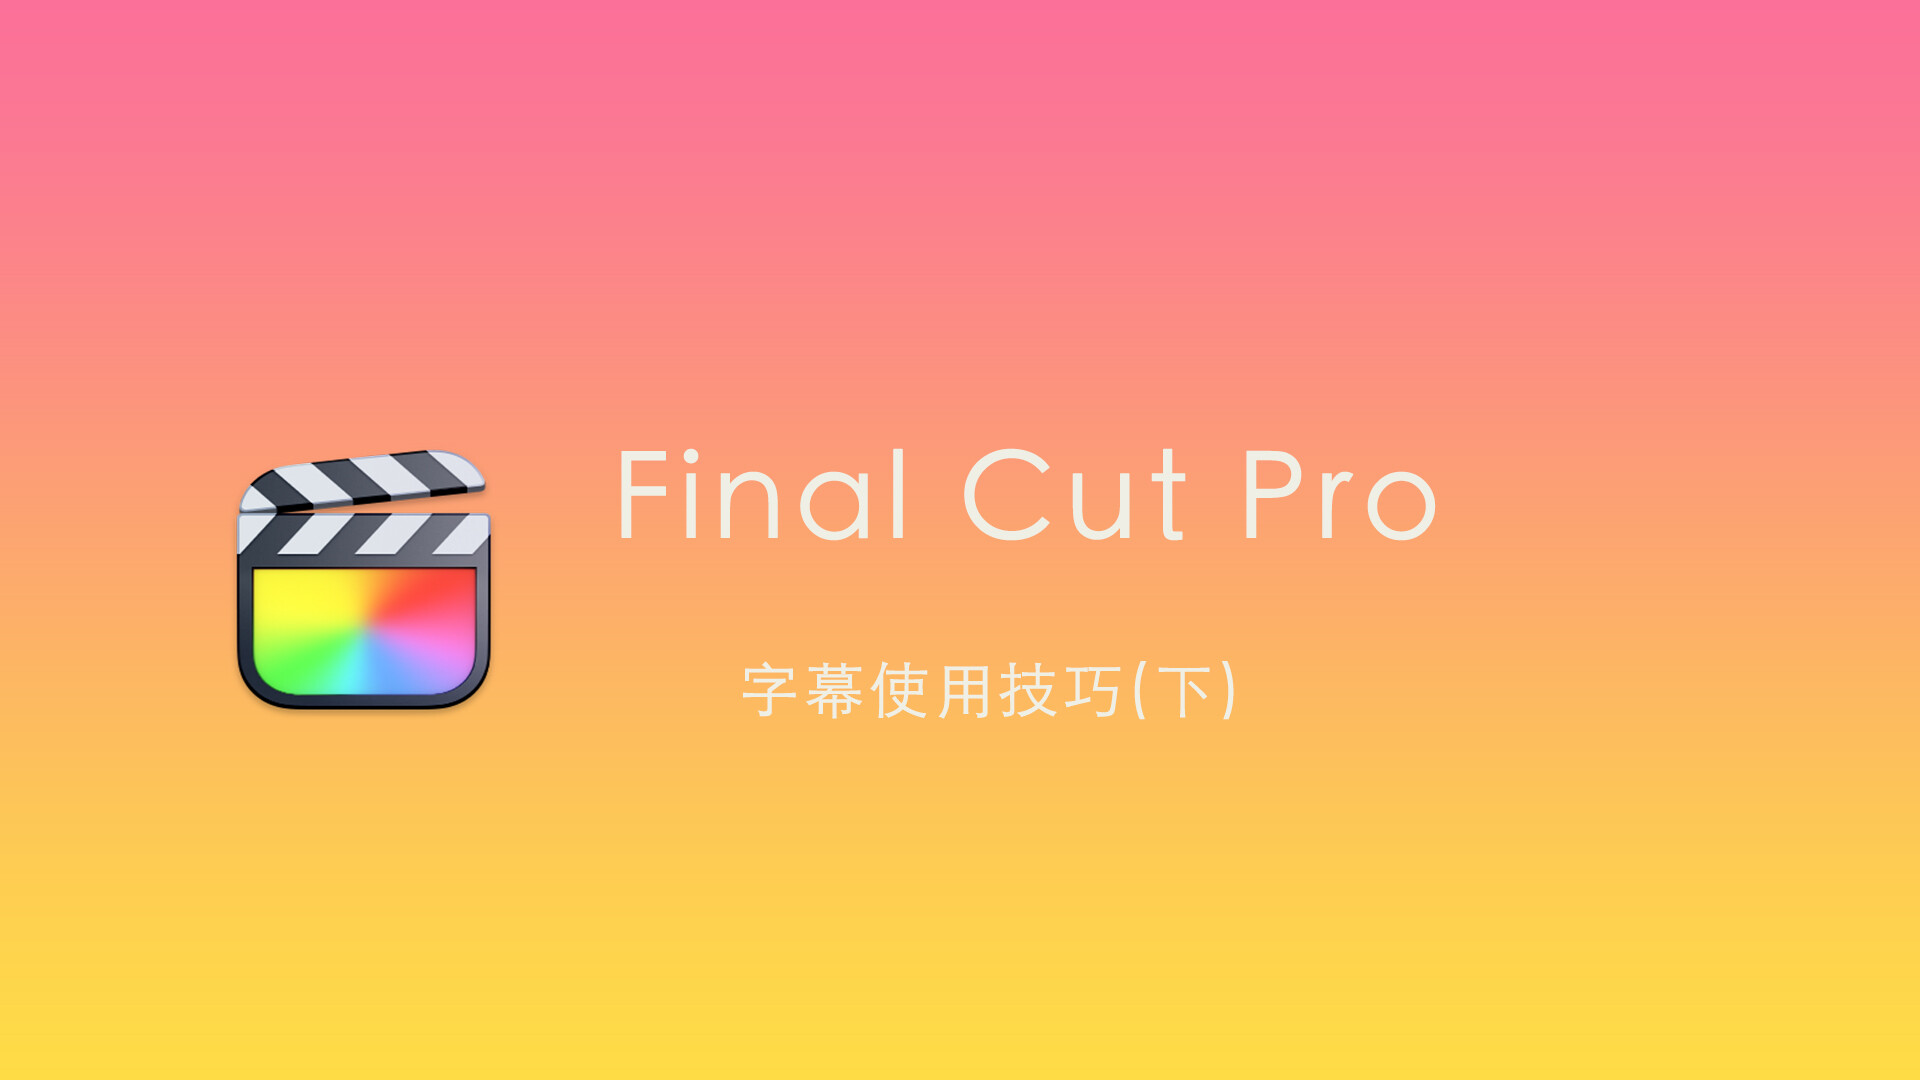 Final Cut Pro 中文基础教程(62)字幕技巧「下」